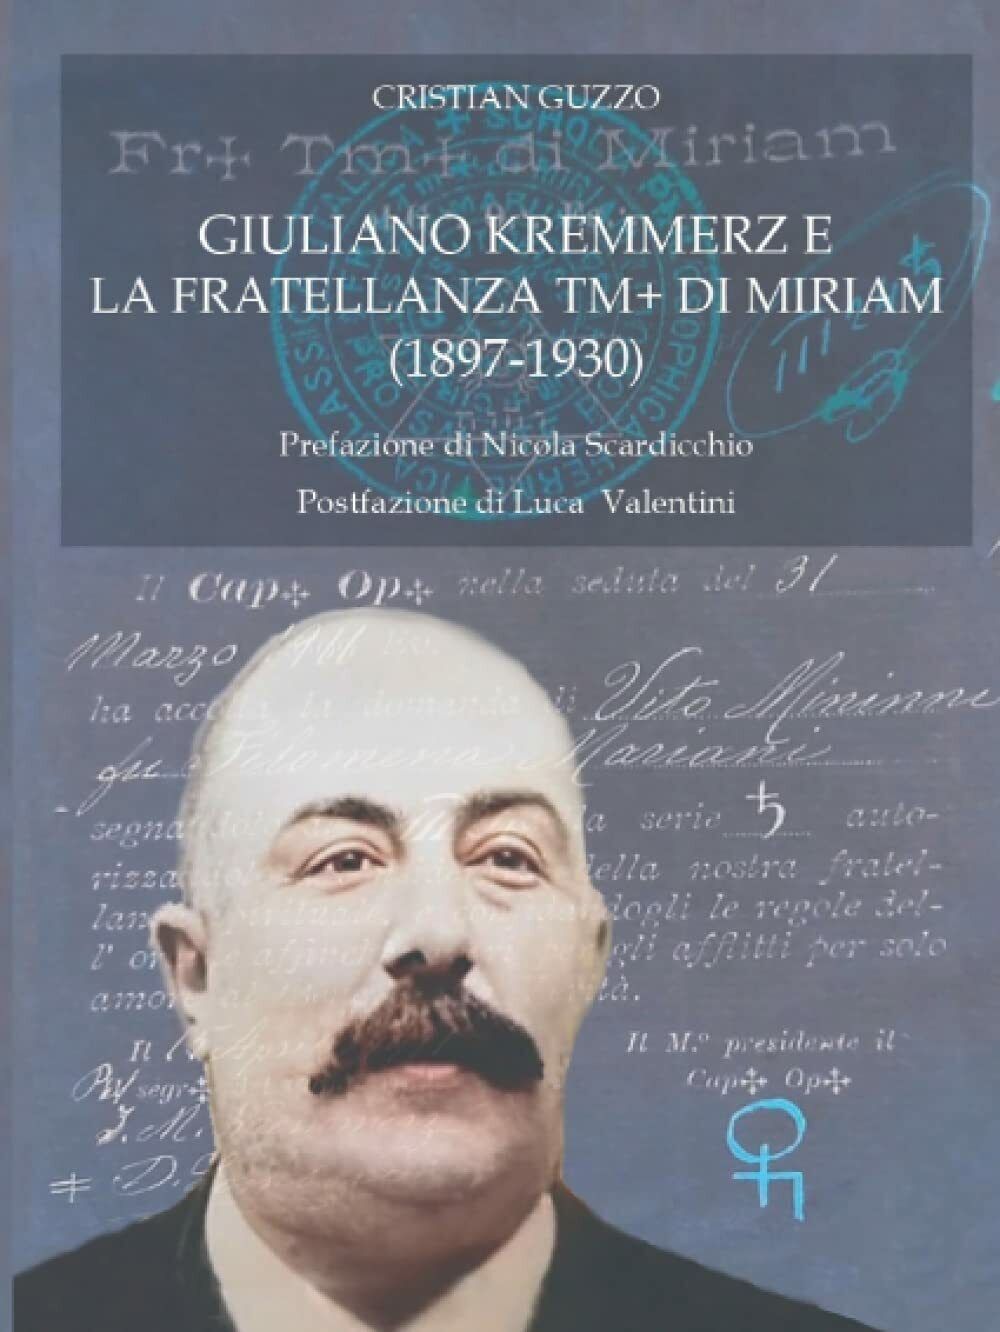 Giuliano Kremmerz e la Fratellanza TM+ di Miriam (1897-1930) di Cristian Guzzo, 